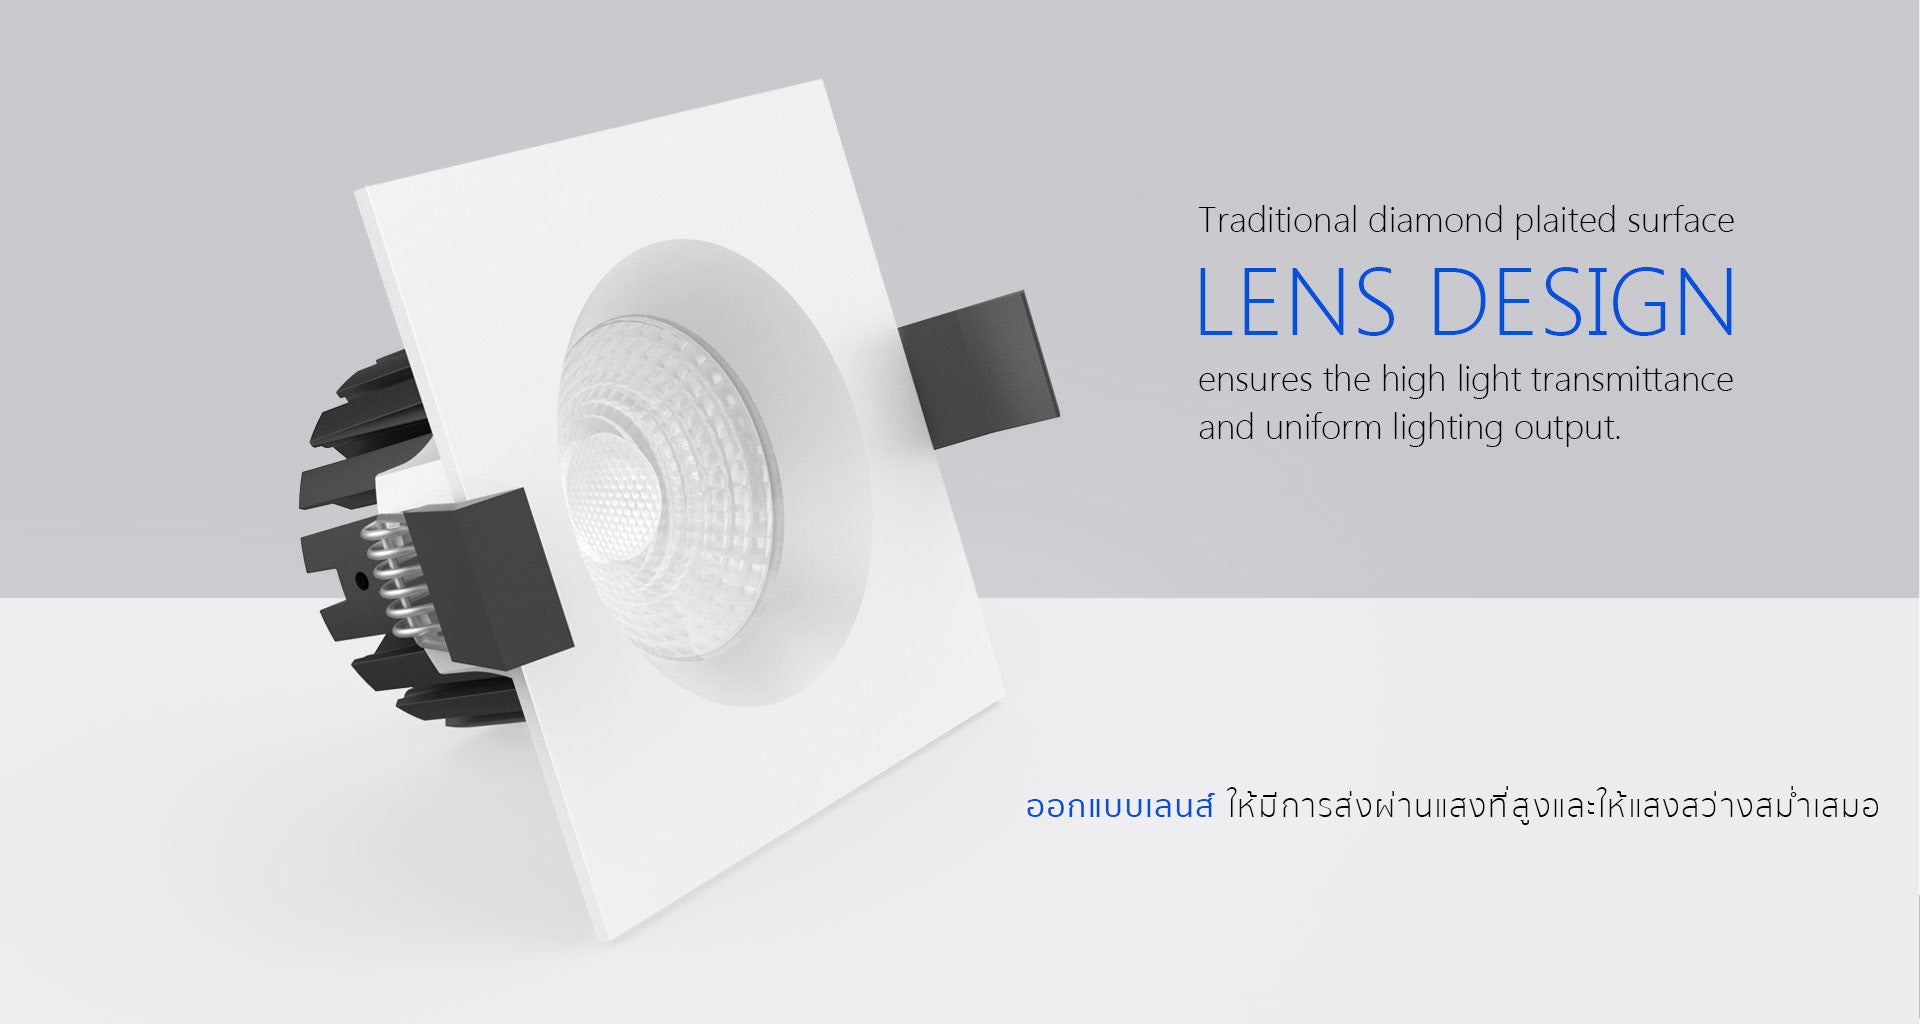 โคมไฟ LED Downlight รุ่น DL104 แบรนด์ BOX BRIGHT ออกแบบเลนส์ ให้มีการส่งผ่านแสงที่สูงและให้เเสงสว่างสม่ำเสมอ